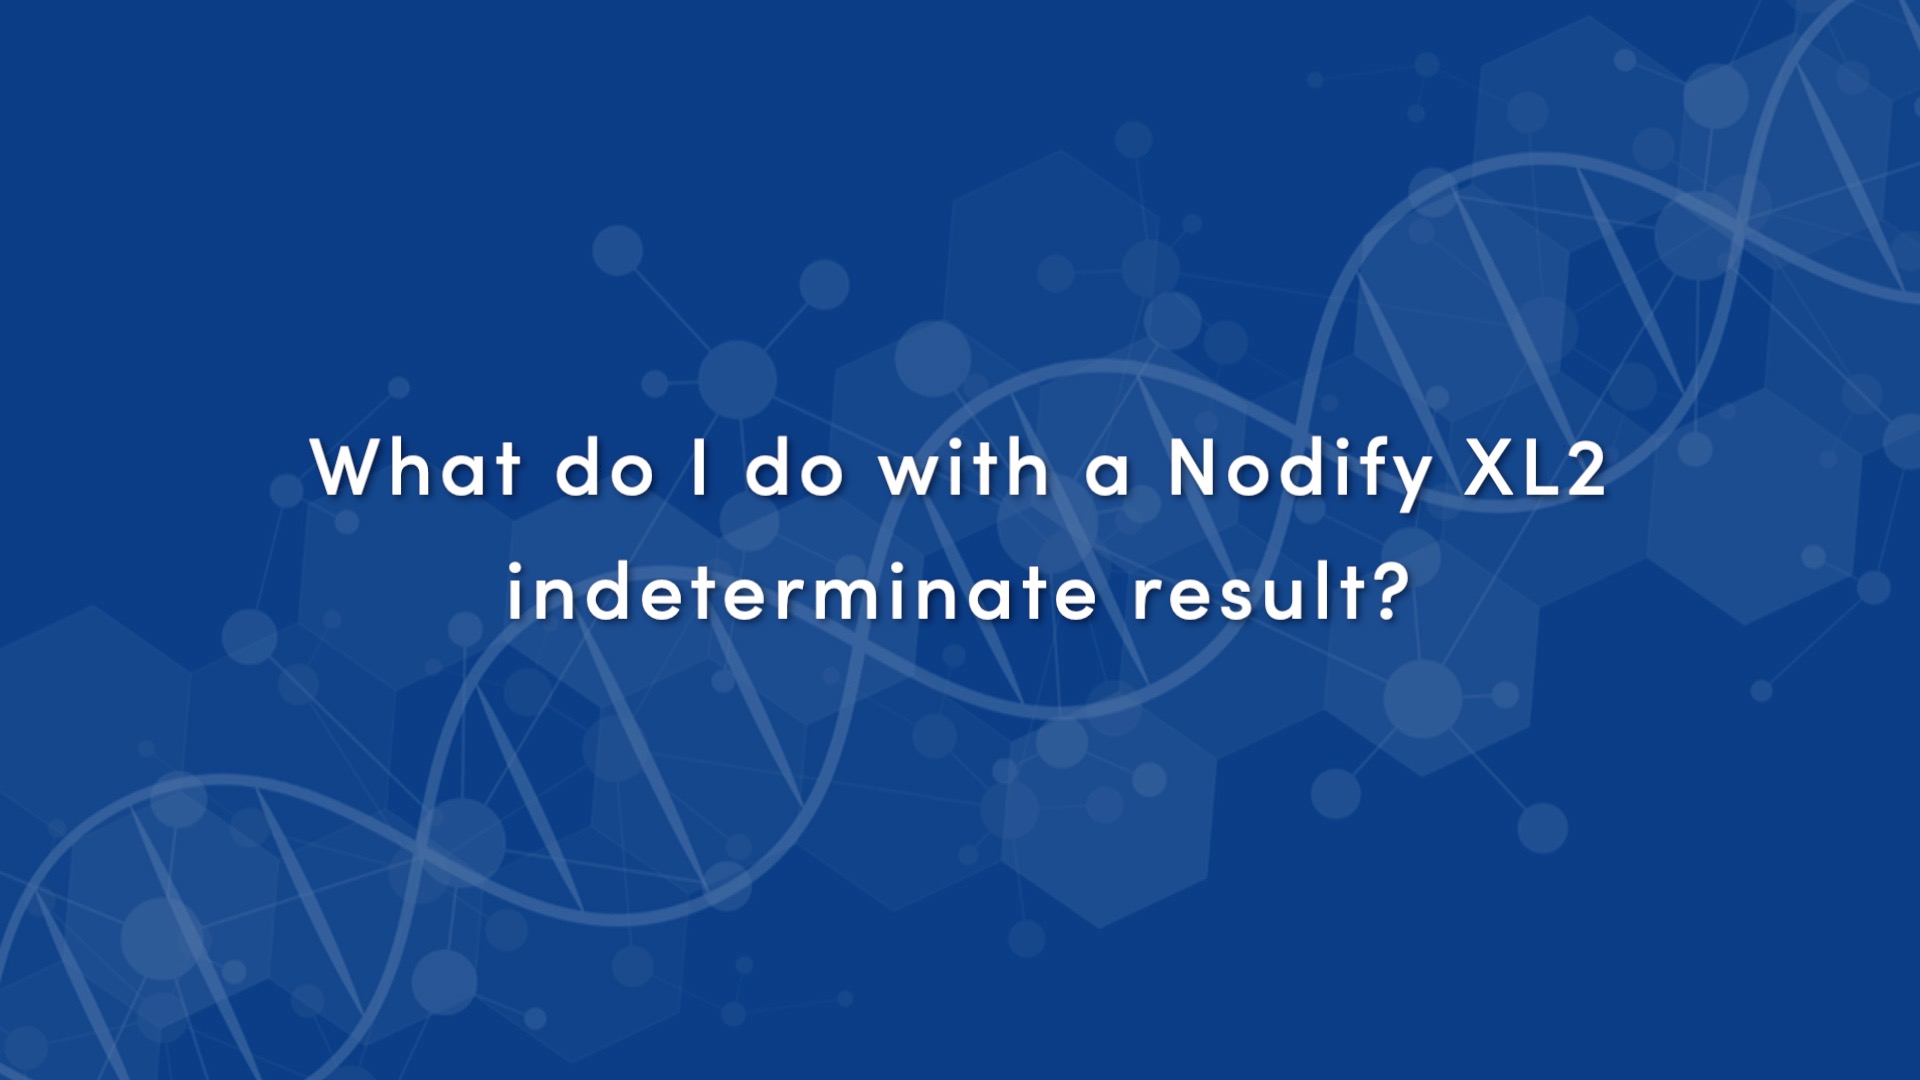 Indeterminate Nodify Result